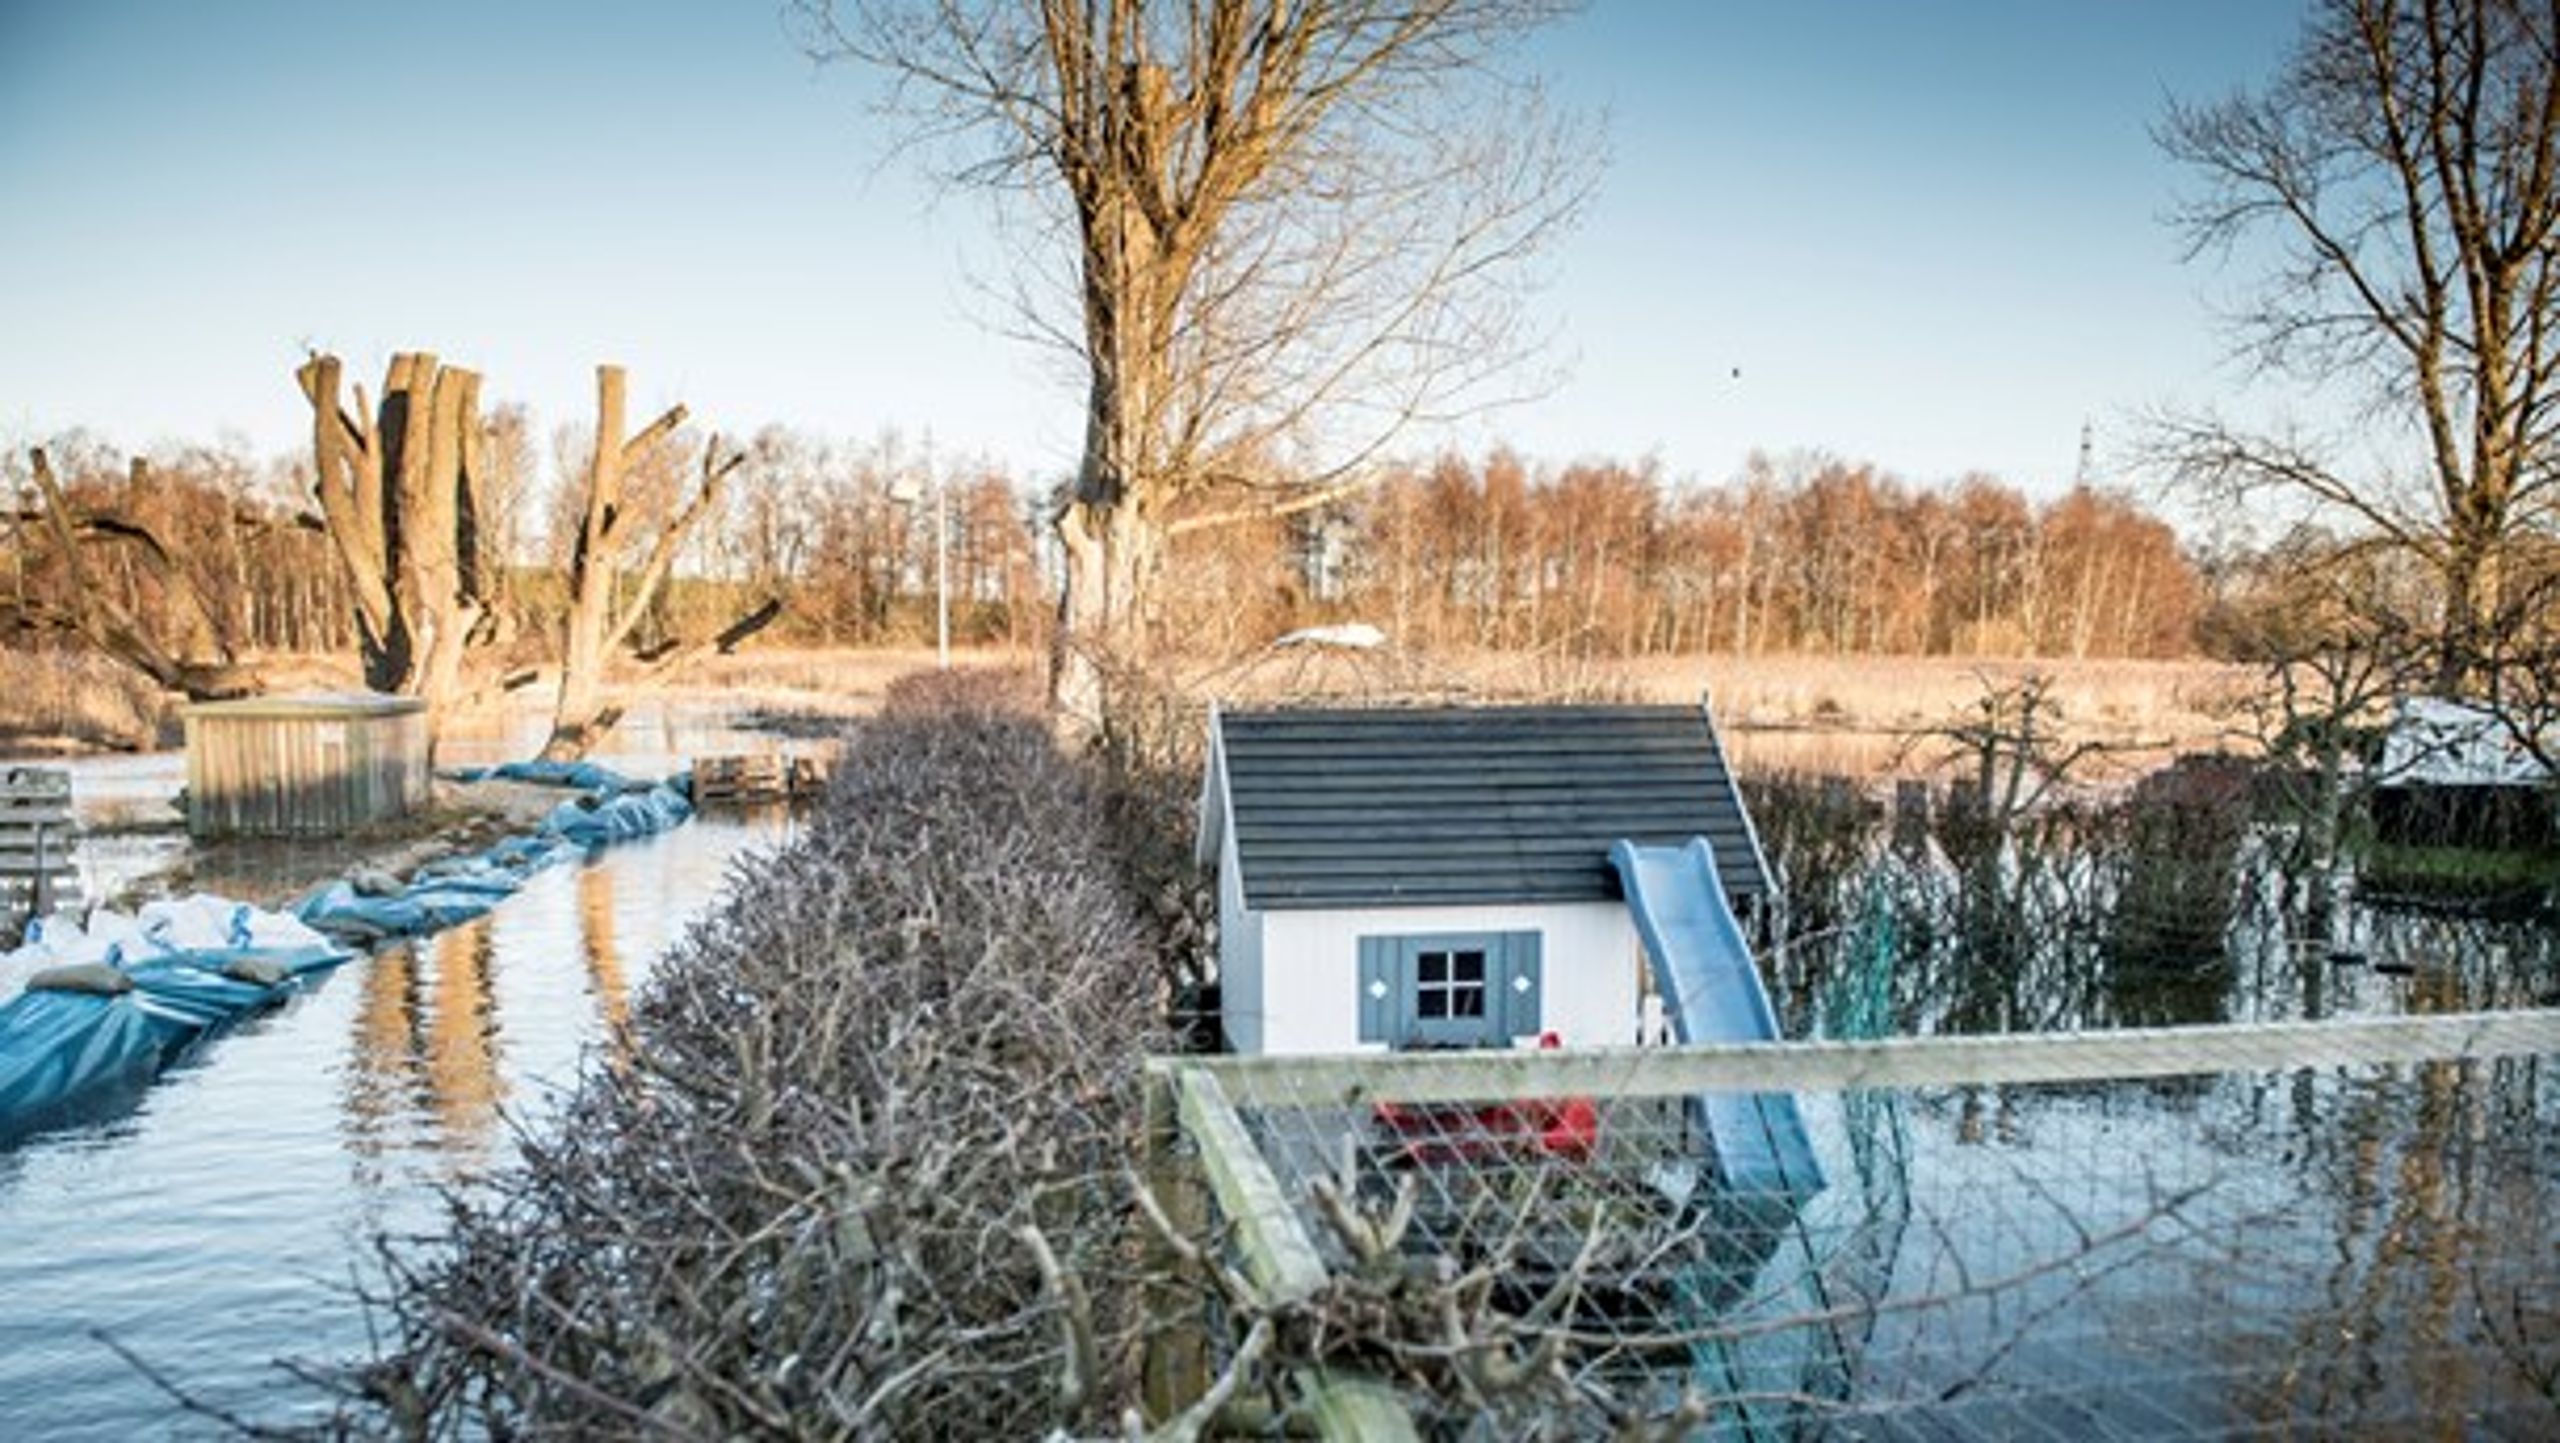 Oversvømmelser er et stigende problem, og her kan kommunerne være med til at udvikle løsninger, skriver Jacob Bjerregaard (S).